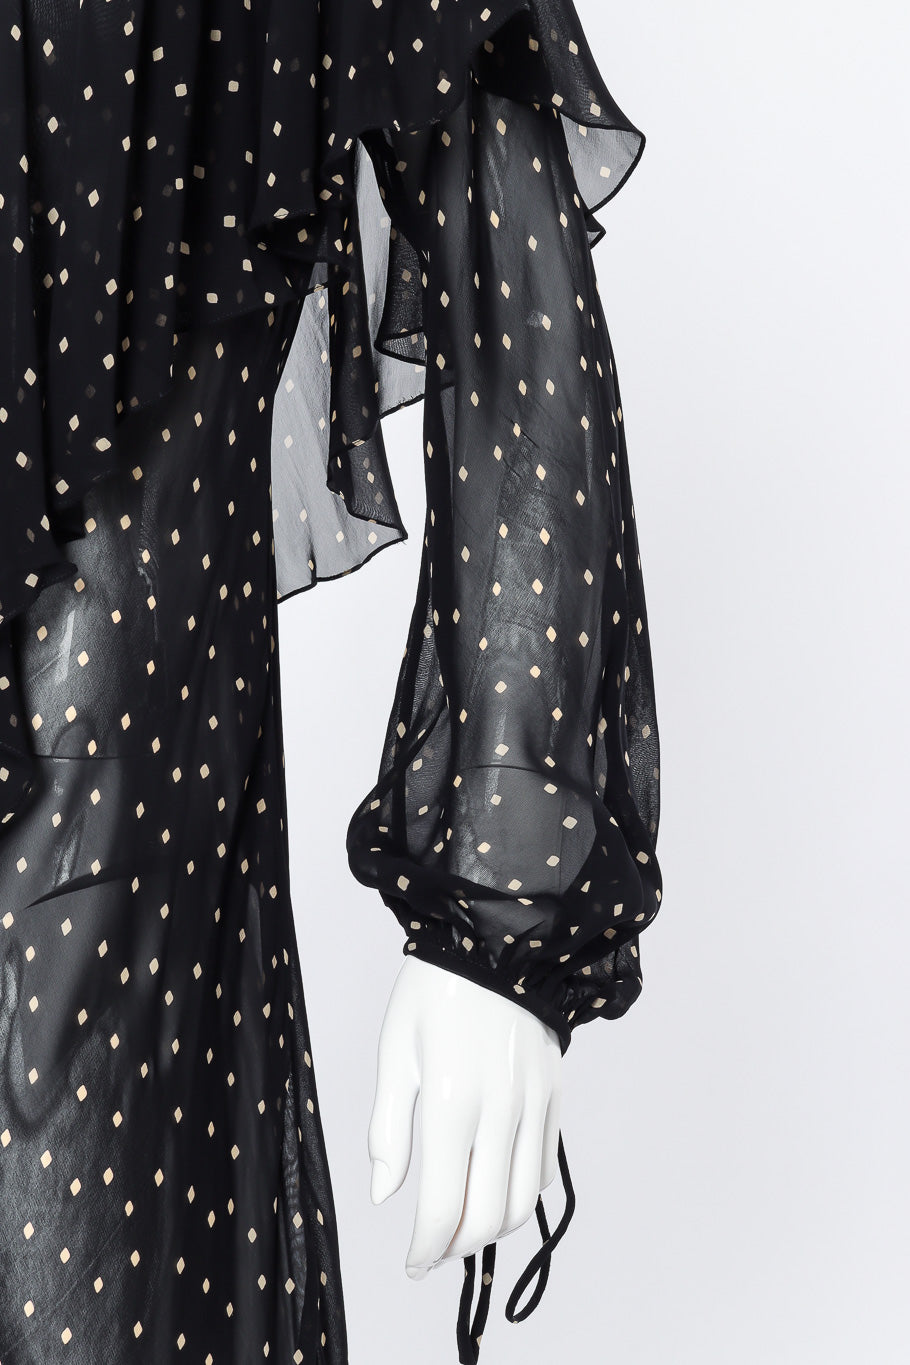 Donna Karan Diamond Dot Ruffle Dress sleeve closeup on mannequin @Recessla